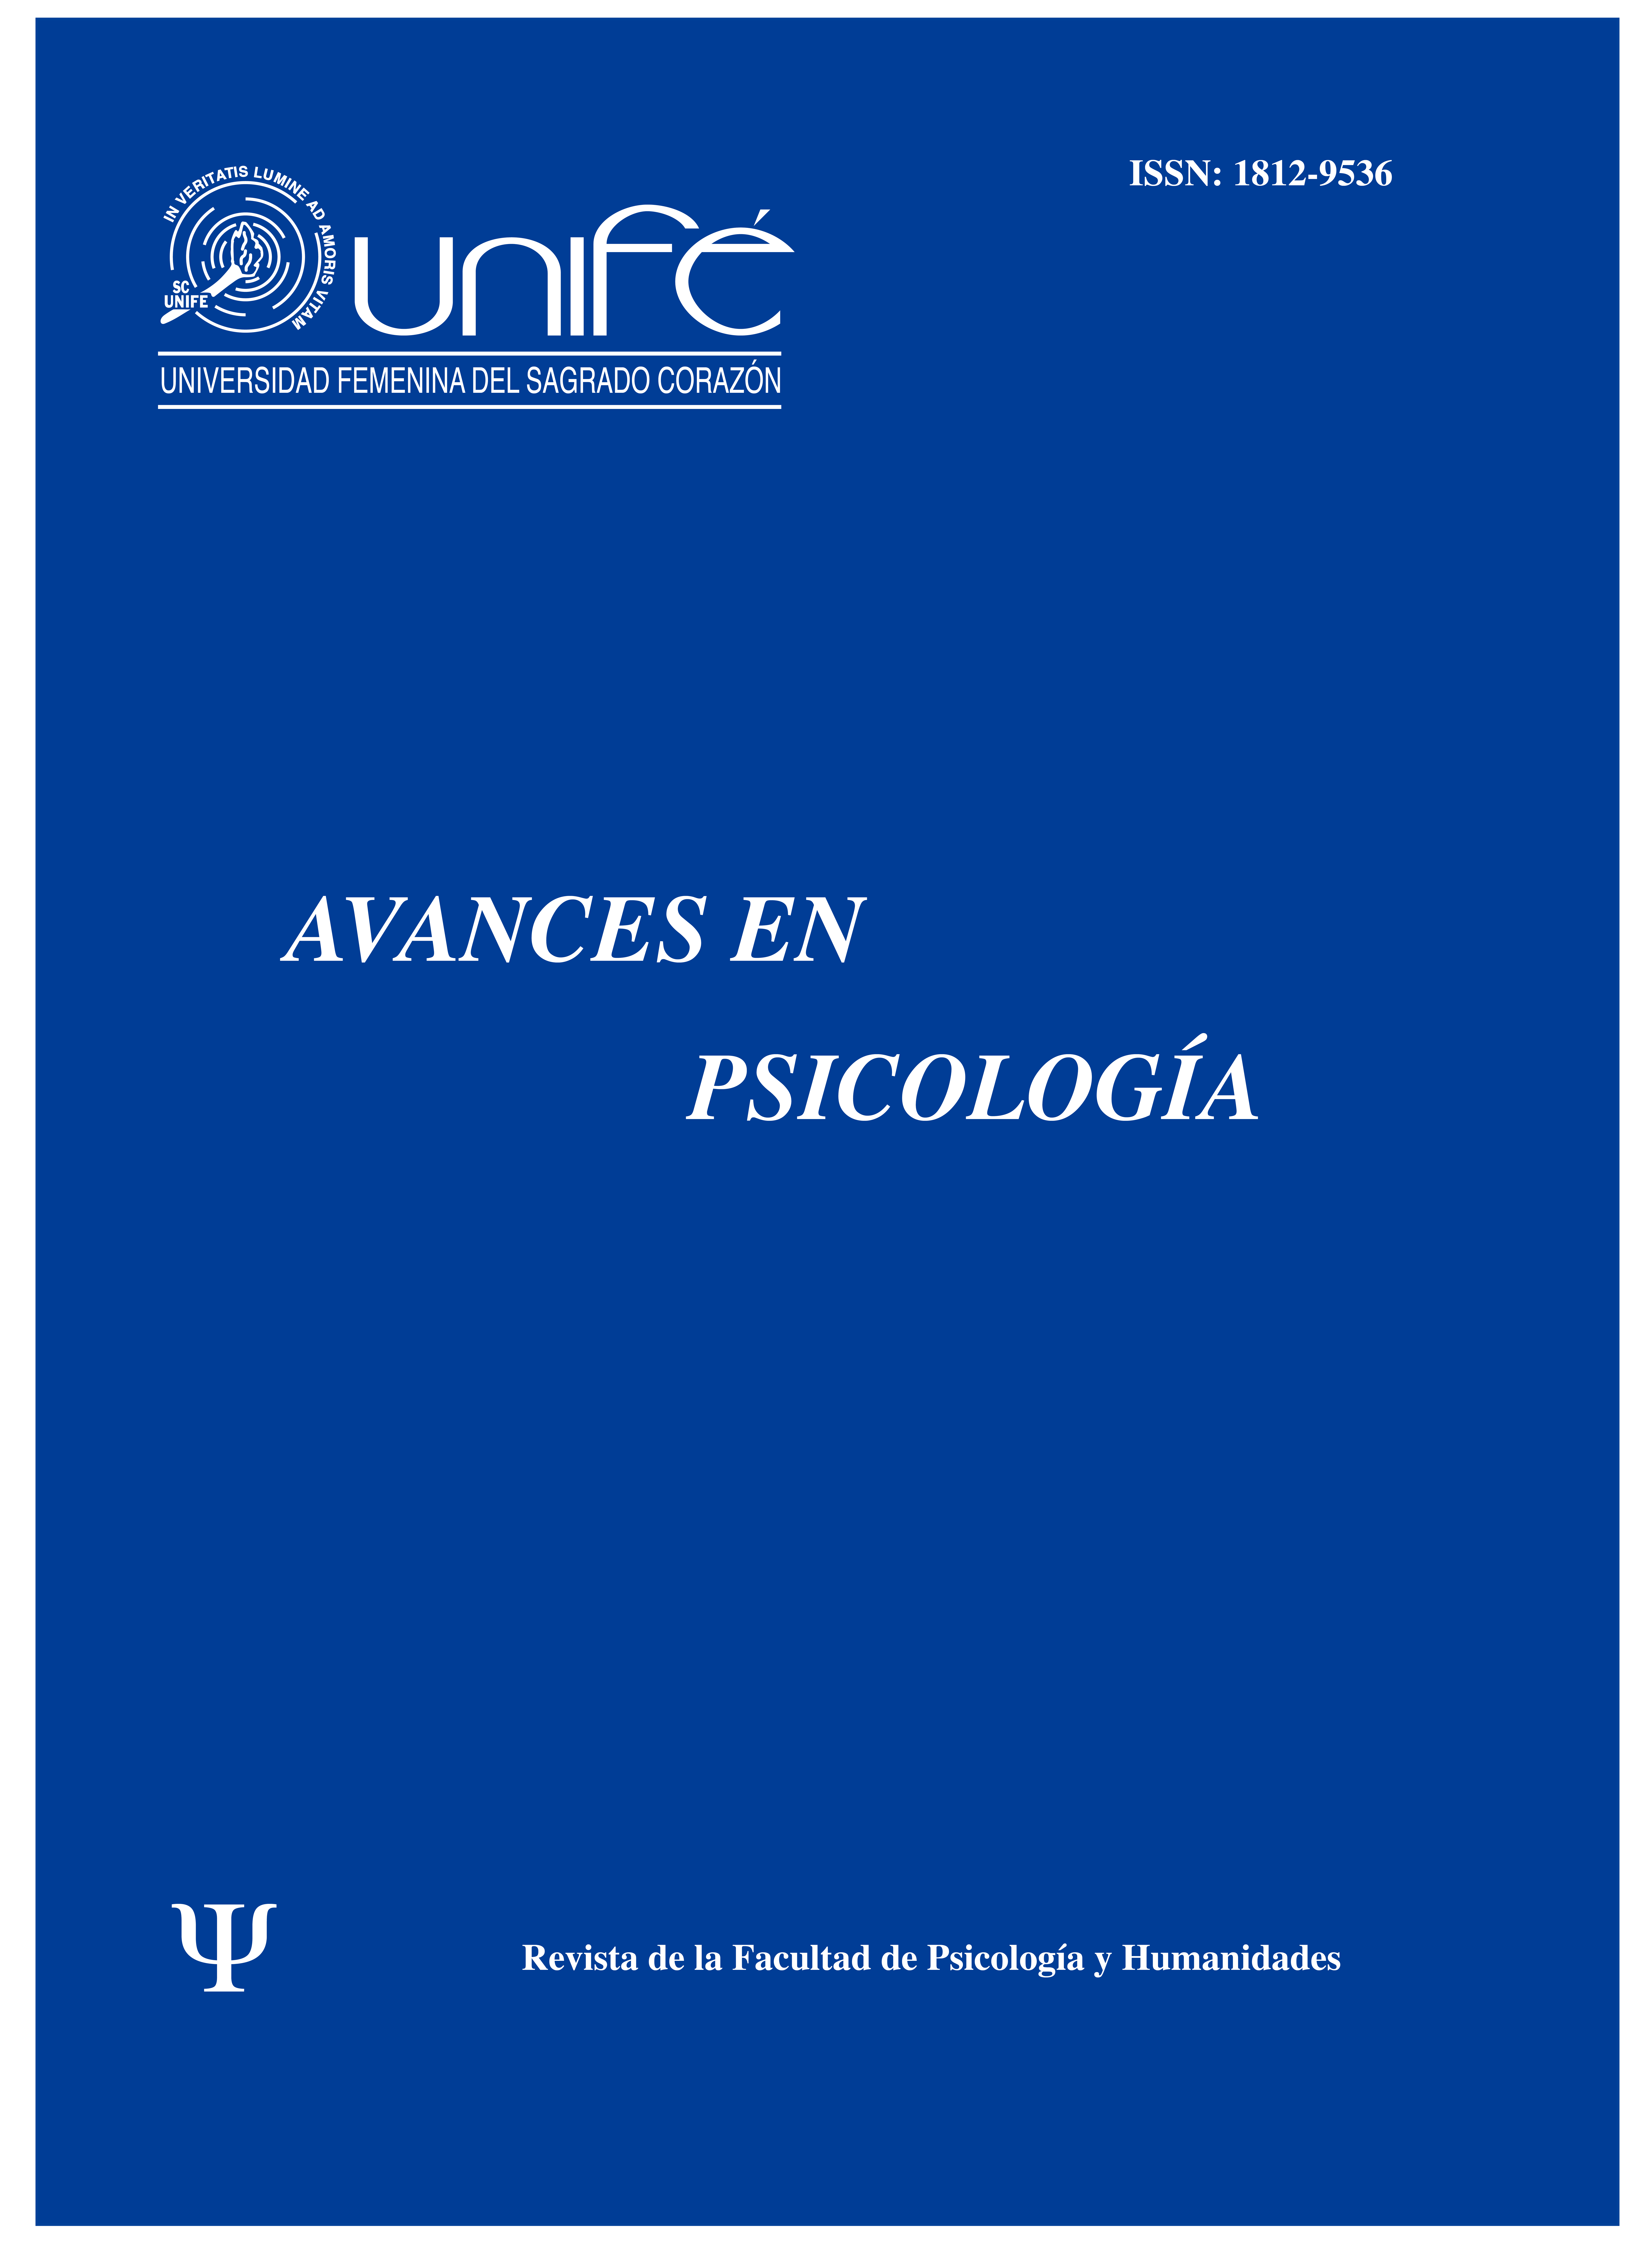 					Ver Vol. 20 Núm. 1 (2012): Avances en Psicología: Revista de la Facultad de Psicología y Humanidades
				